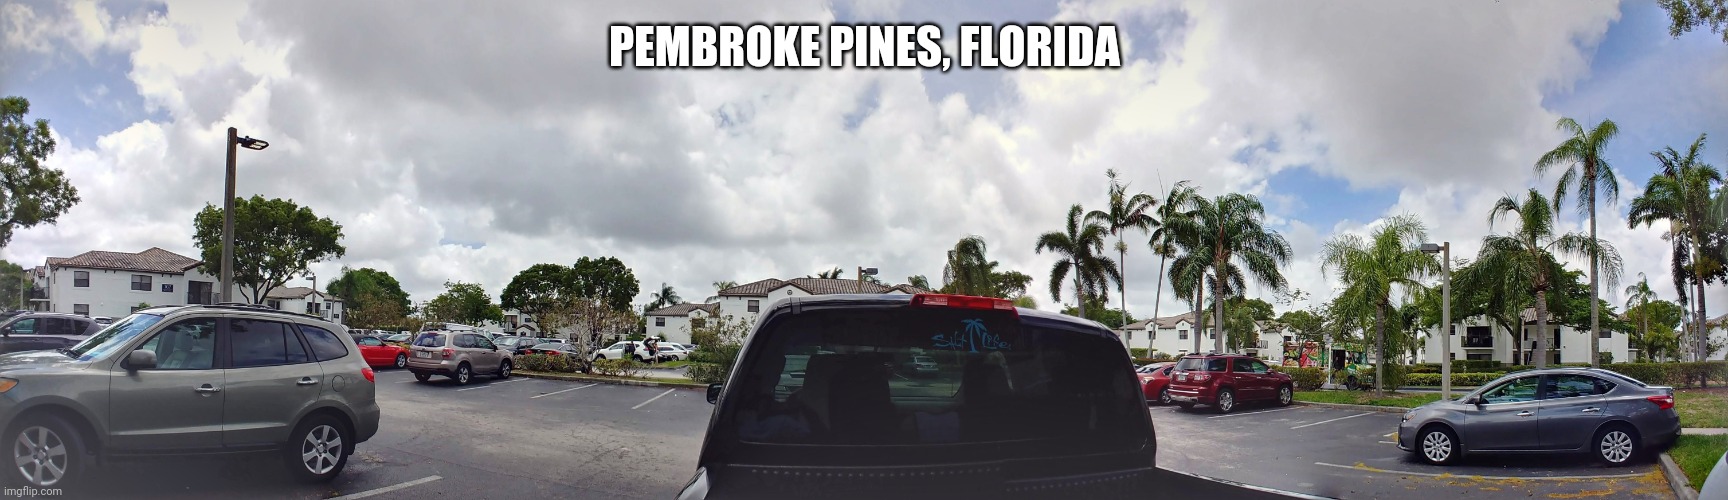 Pembroke pines, Florida | PEMBROKE PINES, FLORIDA | image tagged in florida,pembroke pines | made w/ Imgflip meme maker